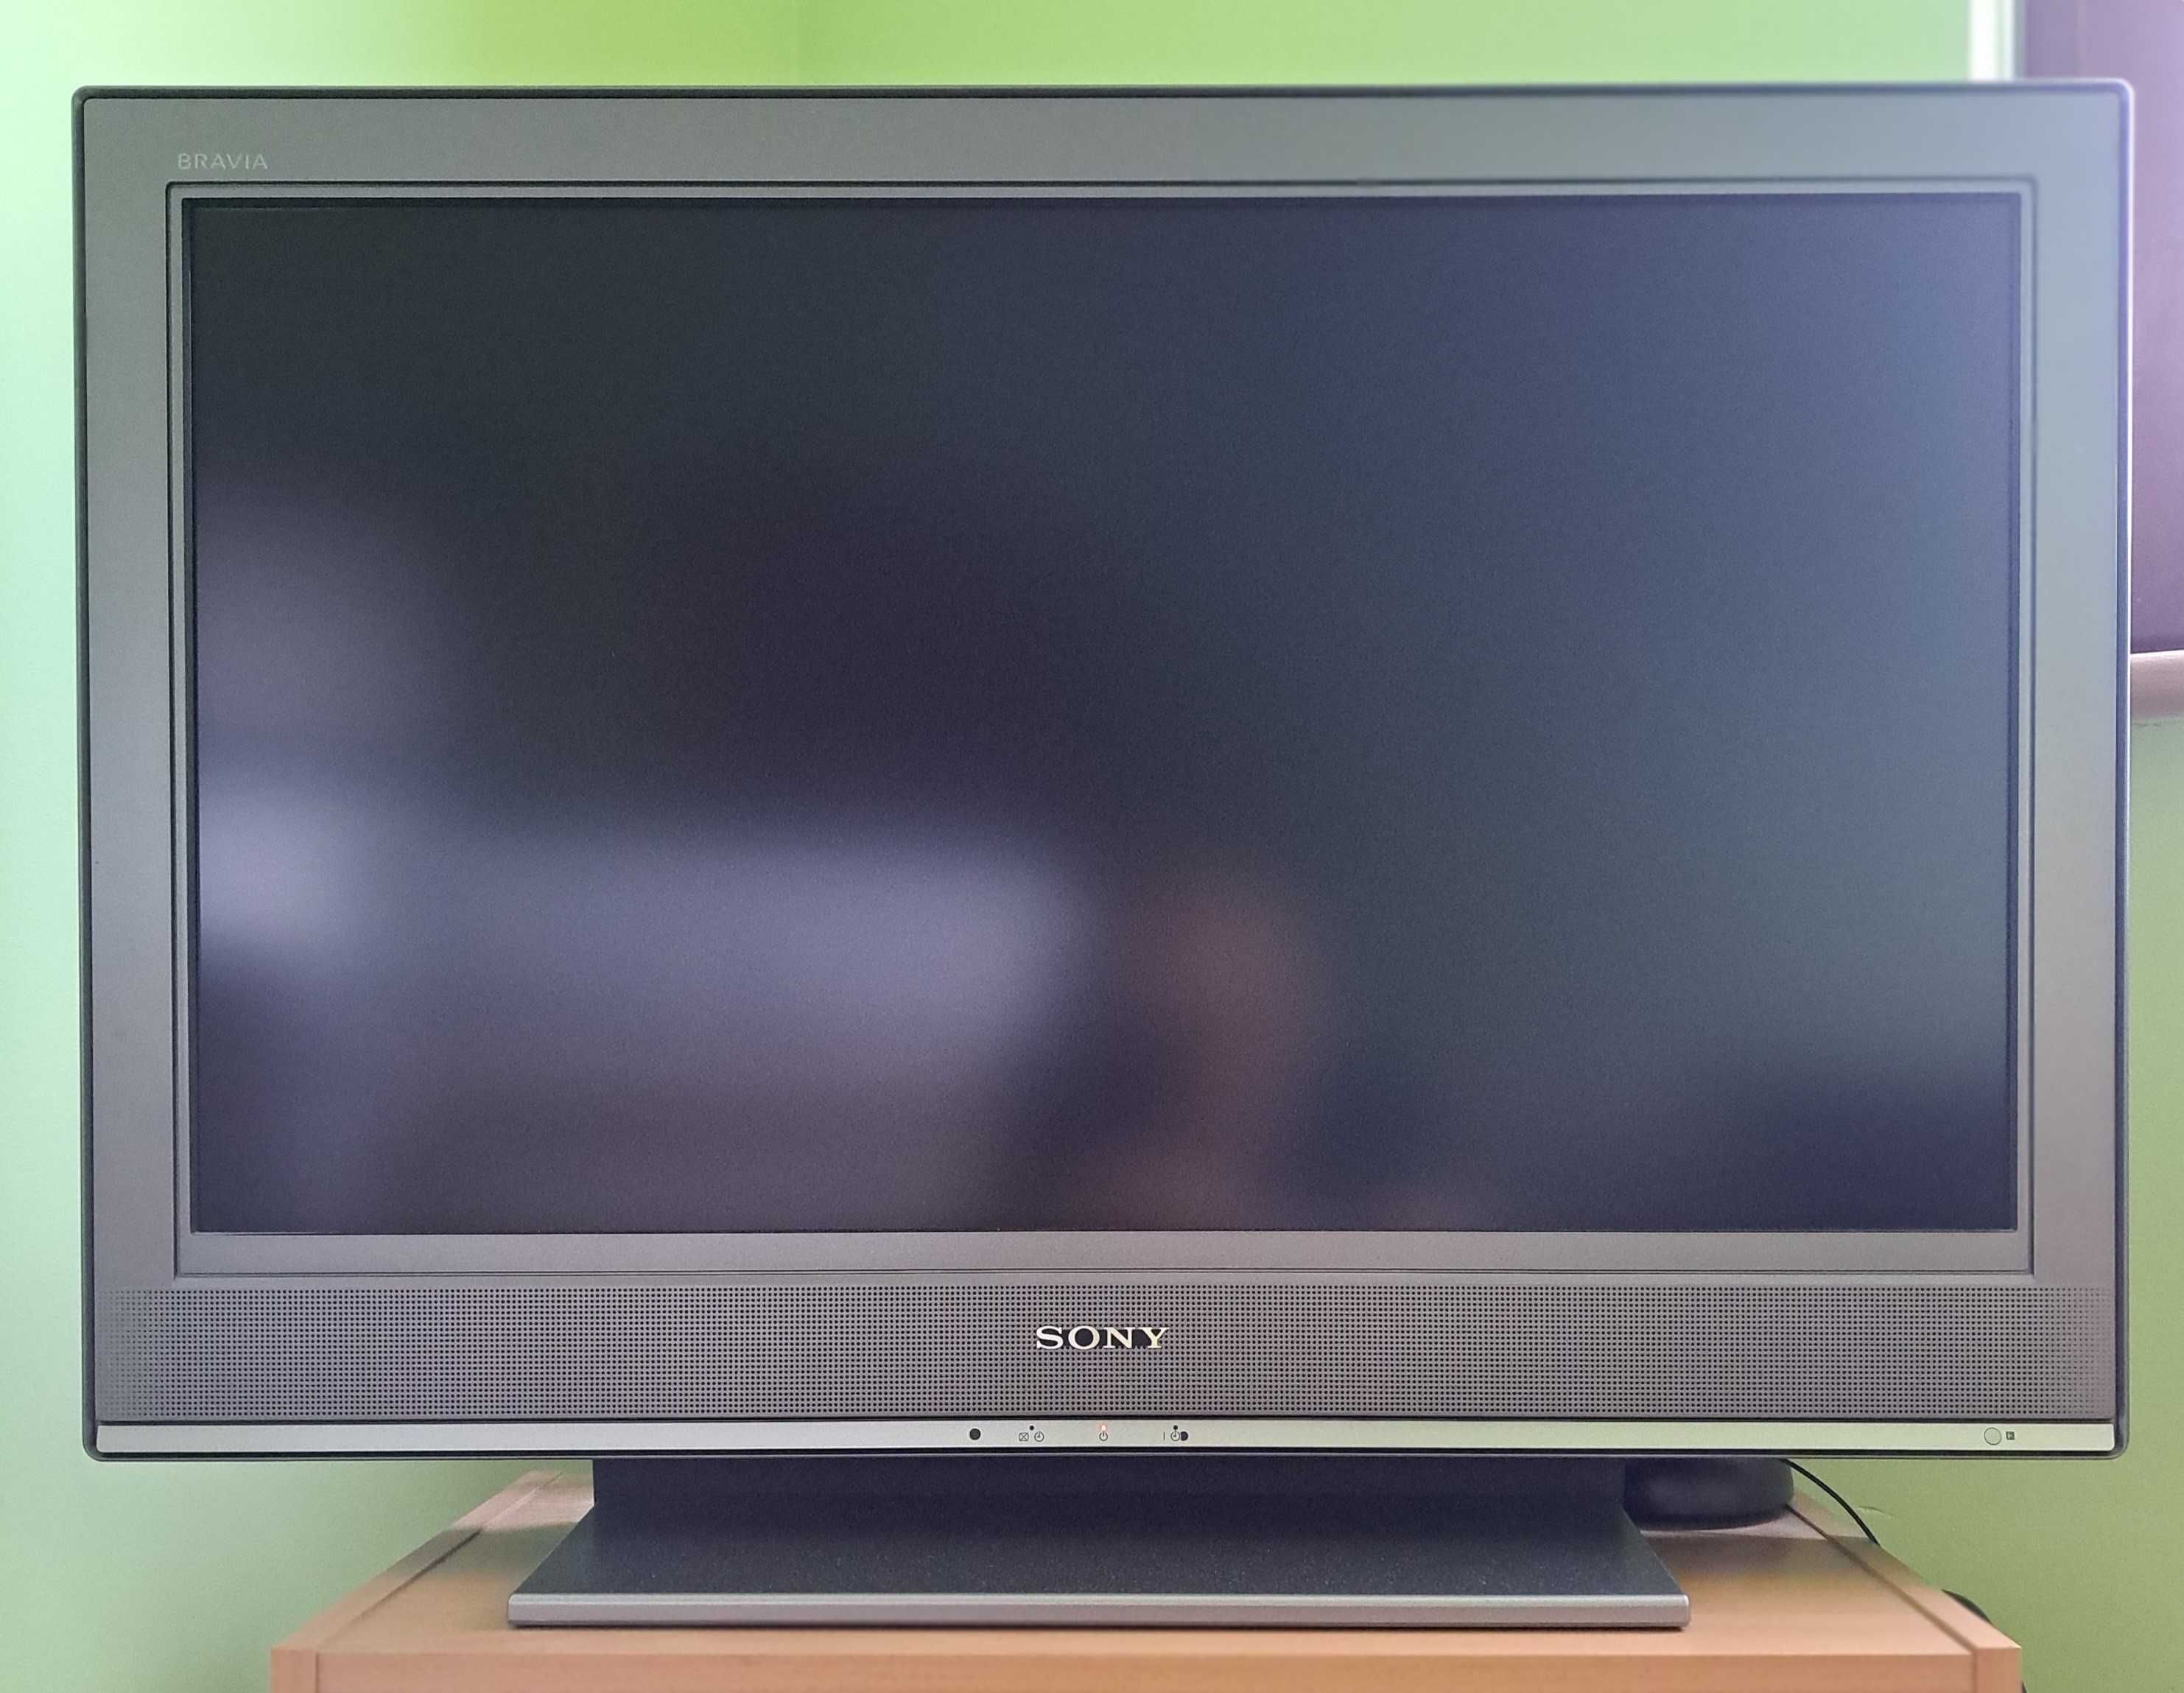 Telewizor SONY 32" model KDL 32S3020 LCD COLOUR TV